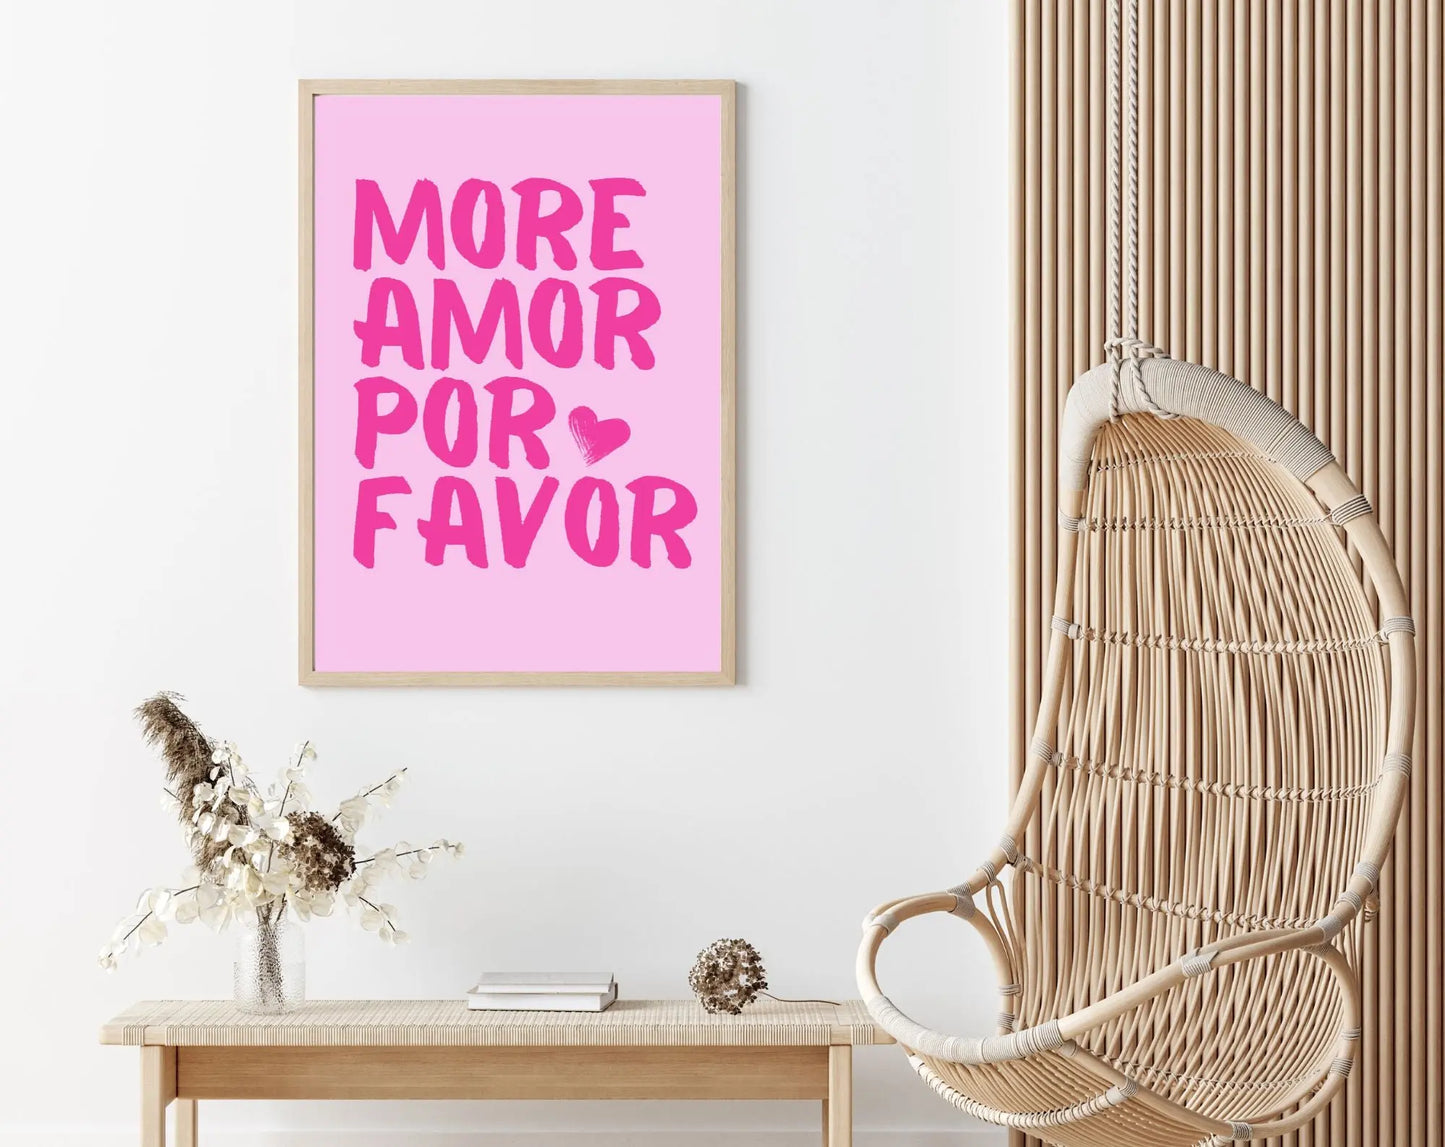 Affiche More Amor Por Favor rose - Affiche de citation d'amour FLTMfrance